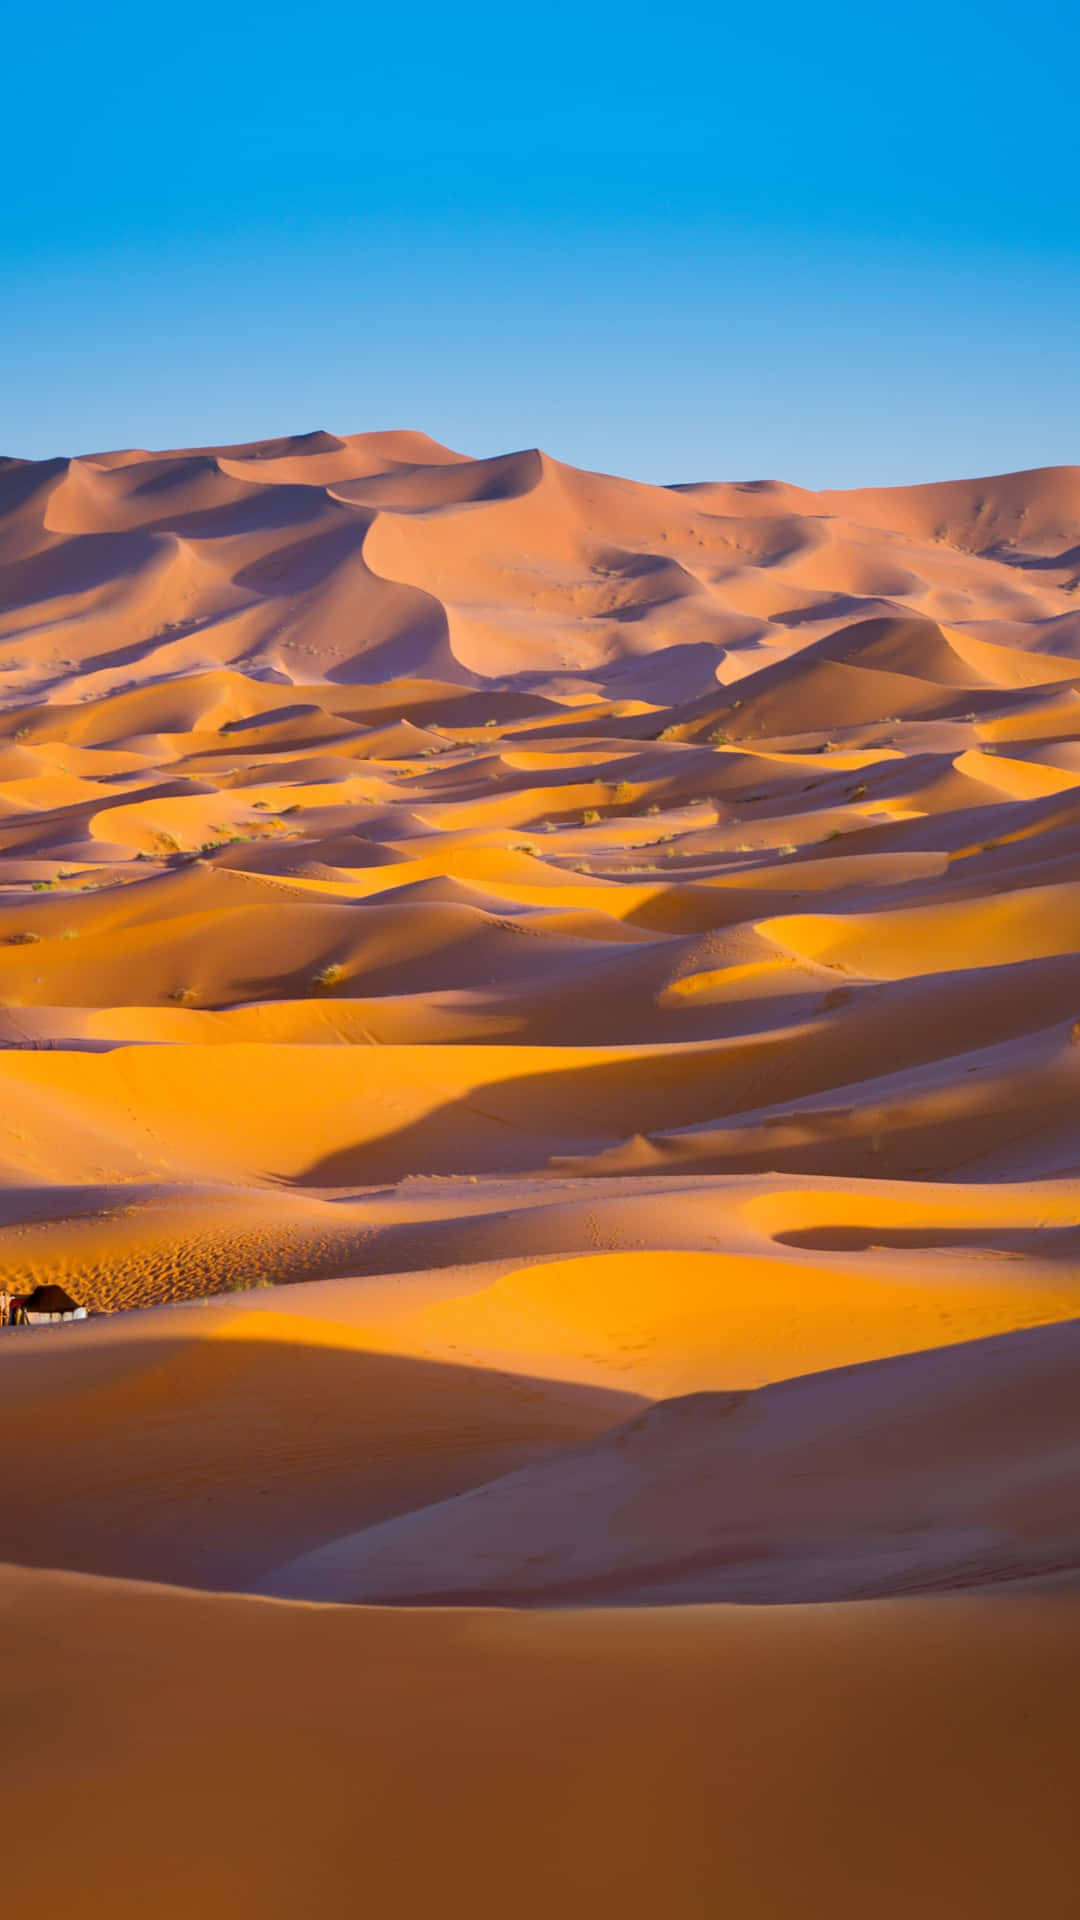 Unavista Affascinante Di Una Duna Deserta Nel Bel Mezzo Di Un Deserto Caldo.